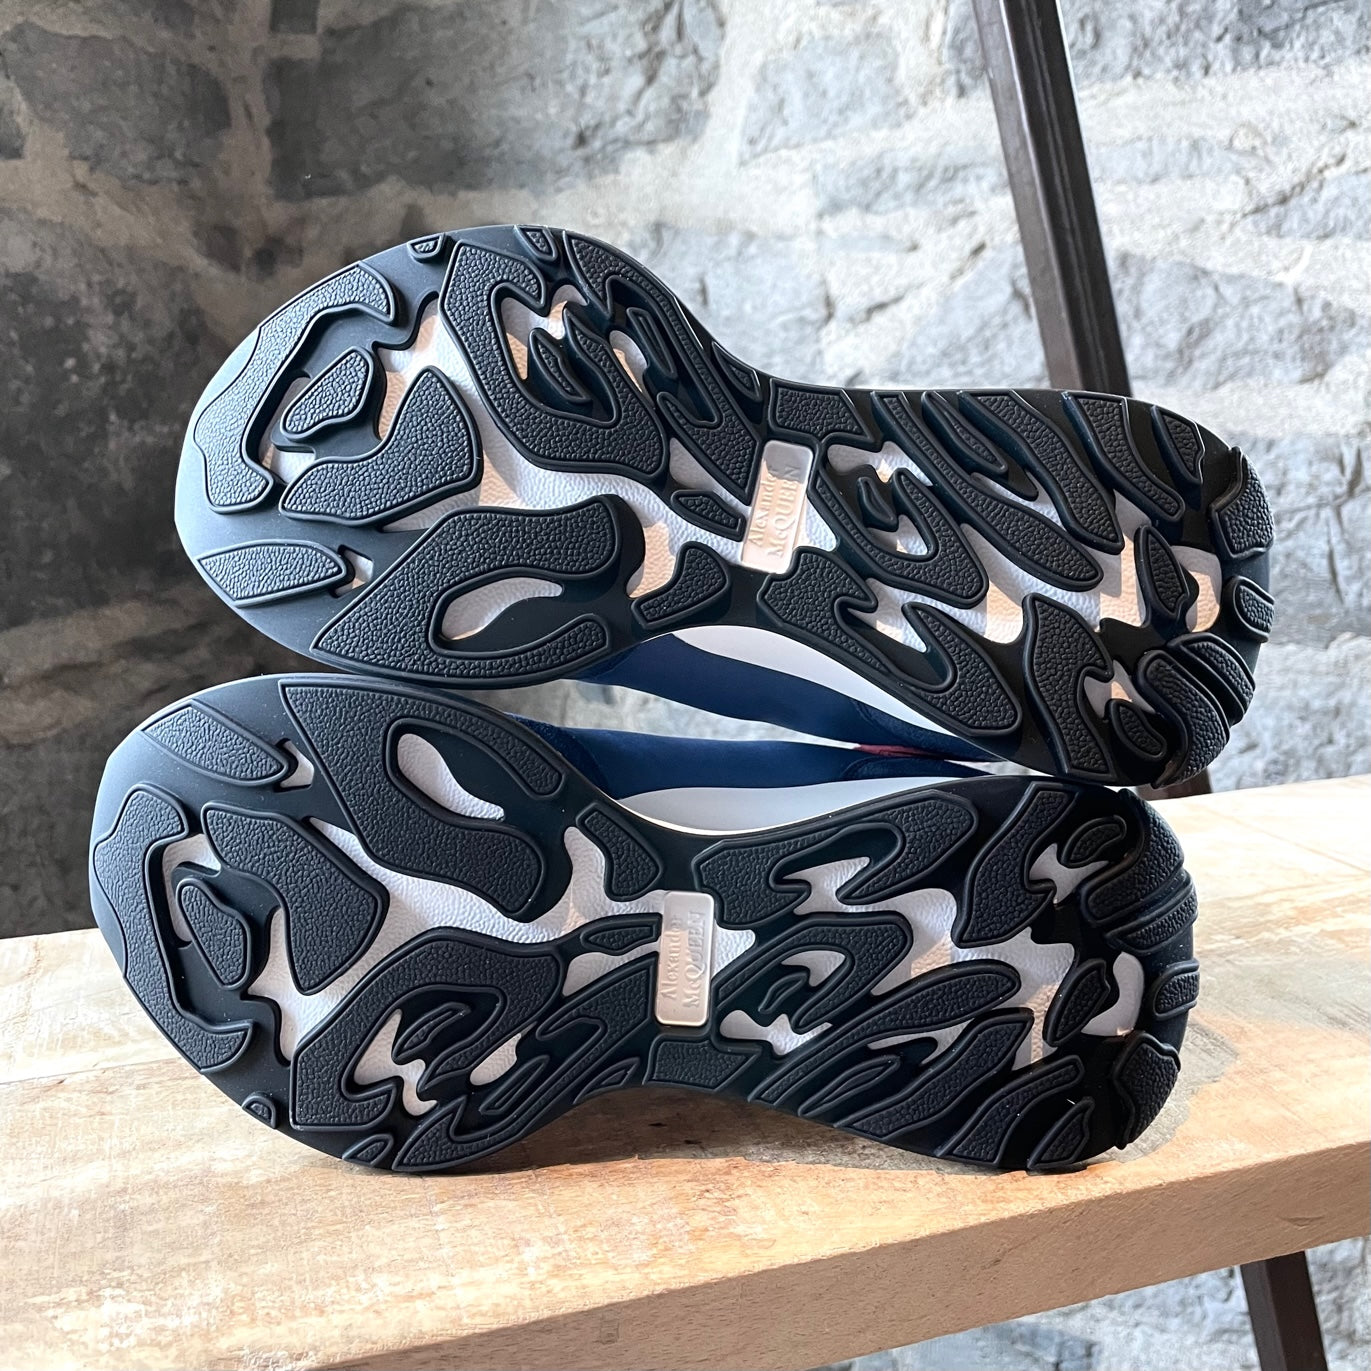 Alexander McQueen Silver Snakeskin Sneakers in Metallic